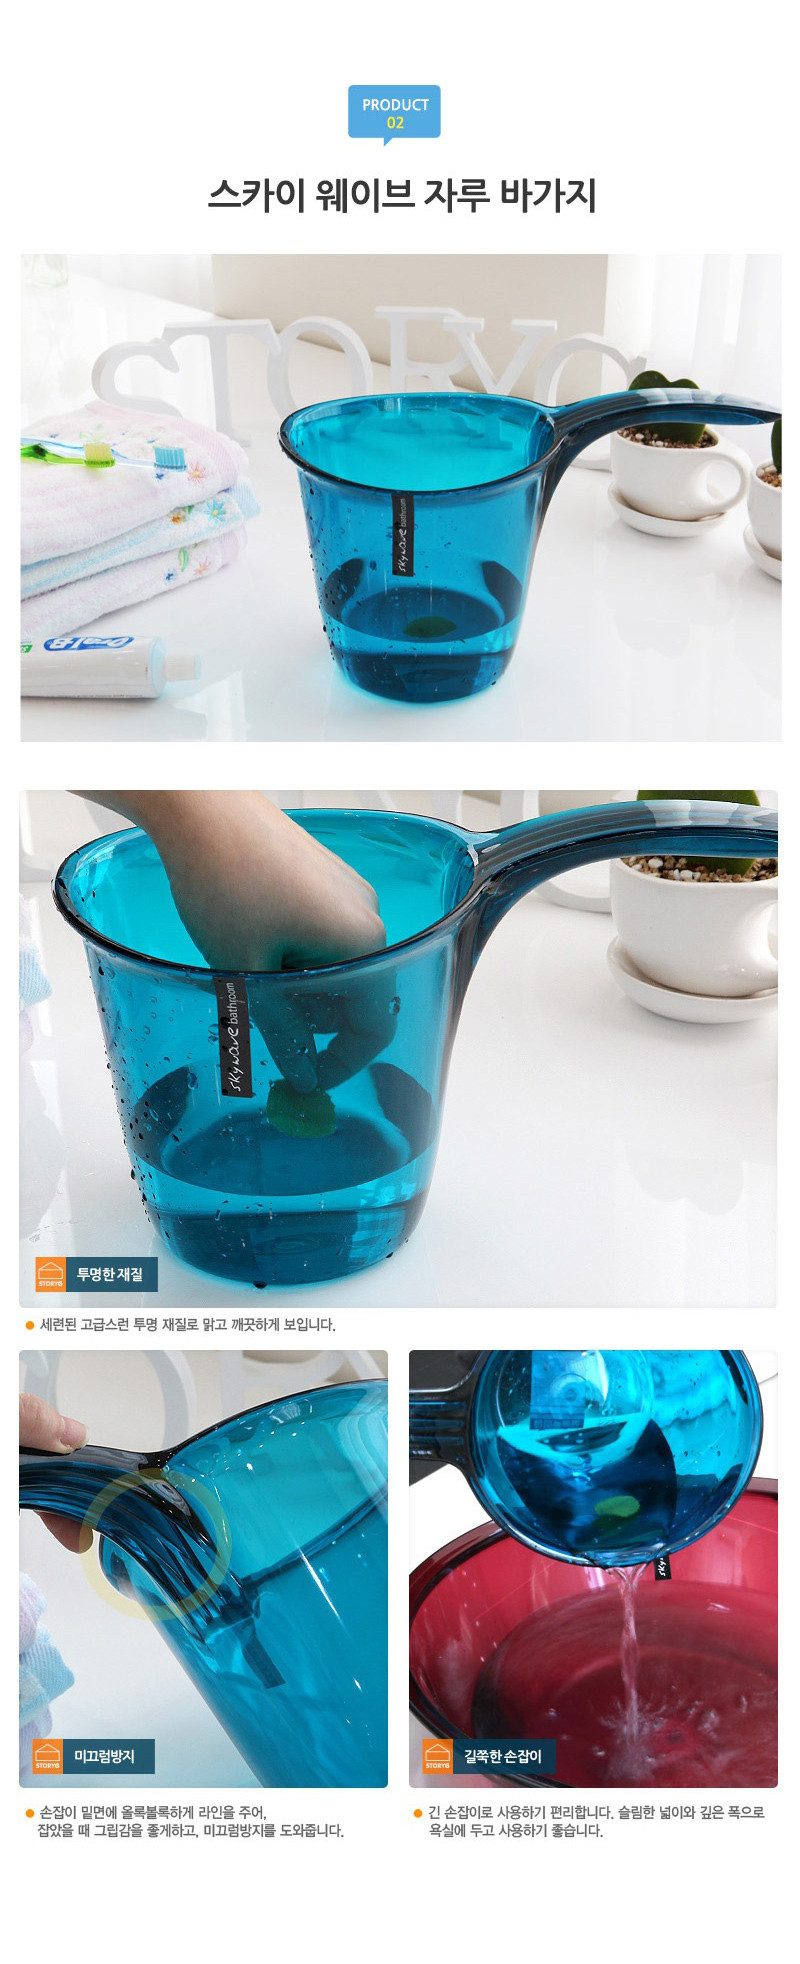 CHANGSIN 韩国进口简约浴室刷牙杯洗漱牙具套装 卫浴五件套